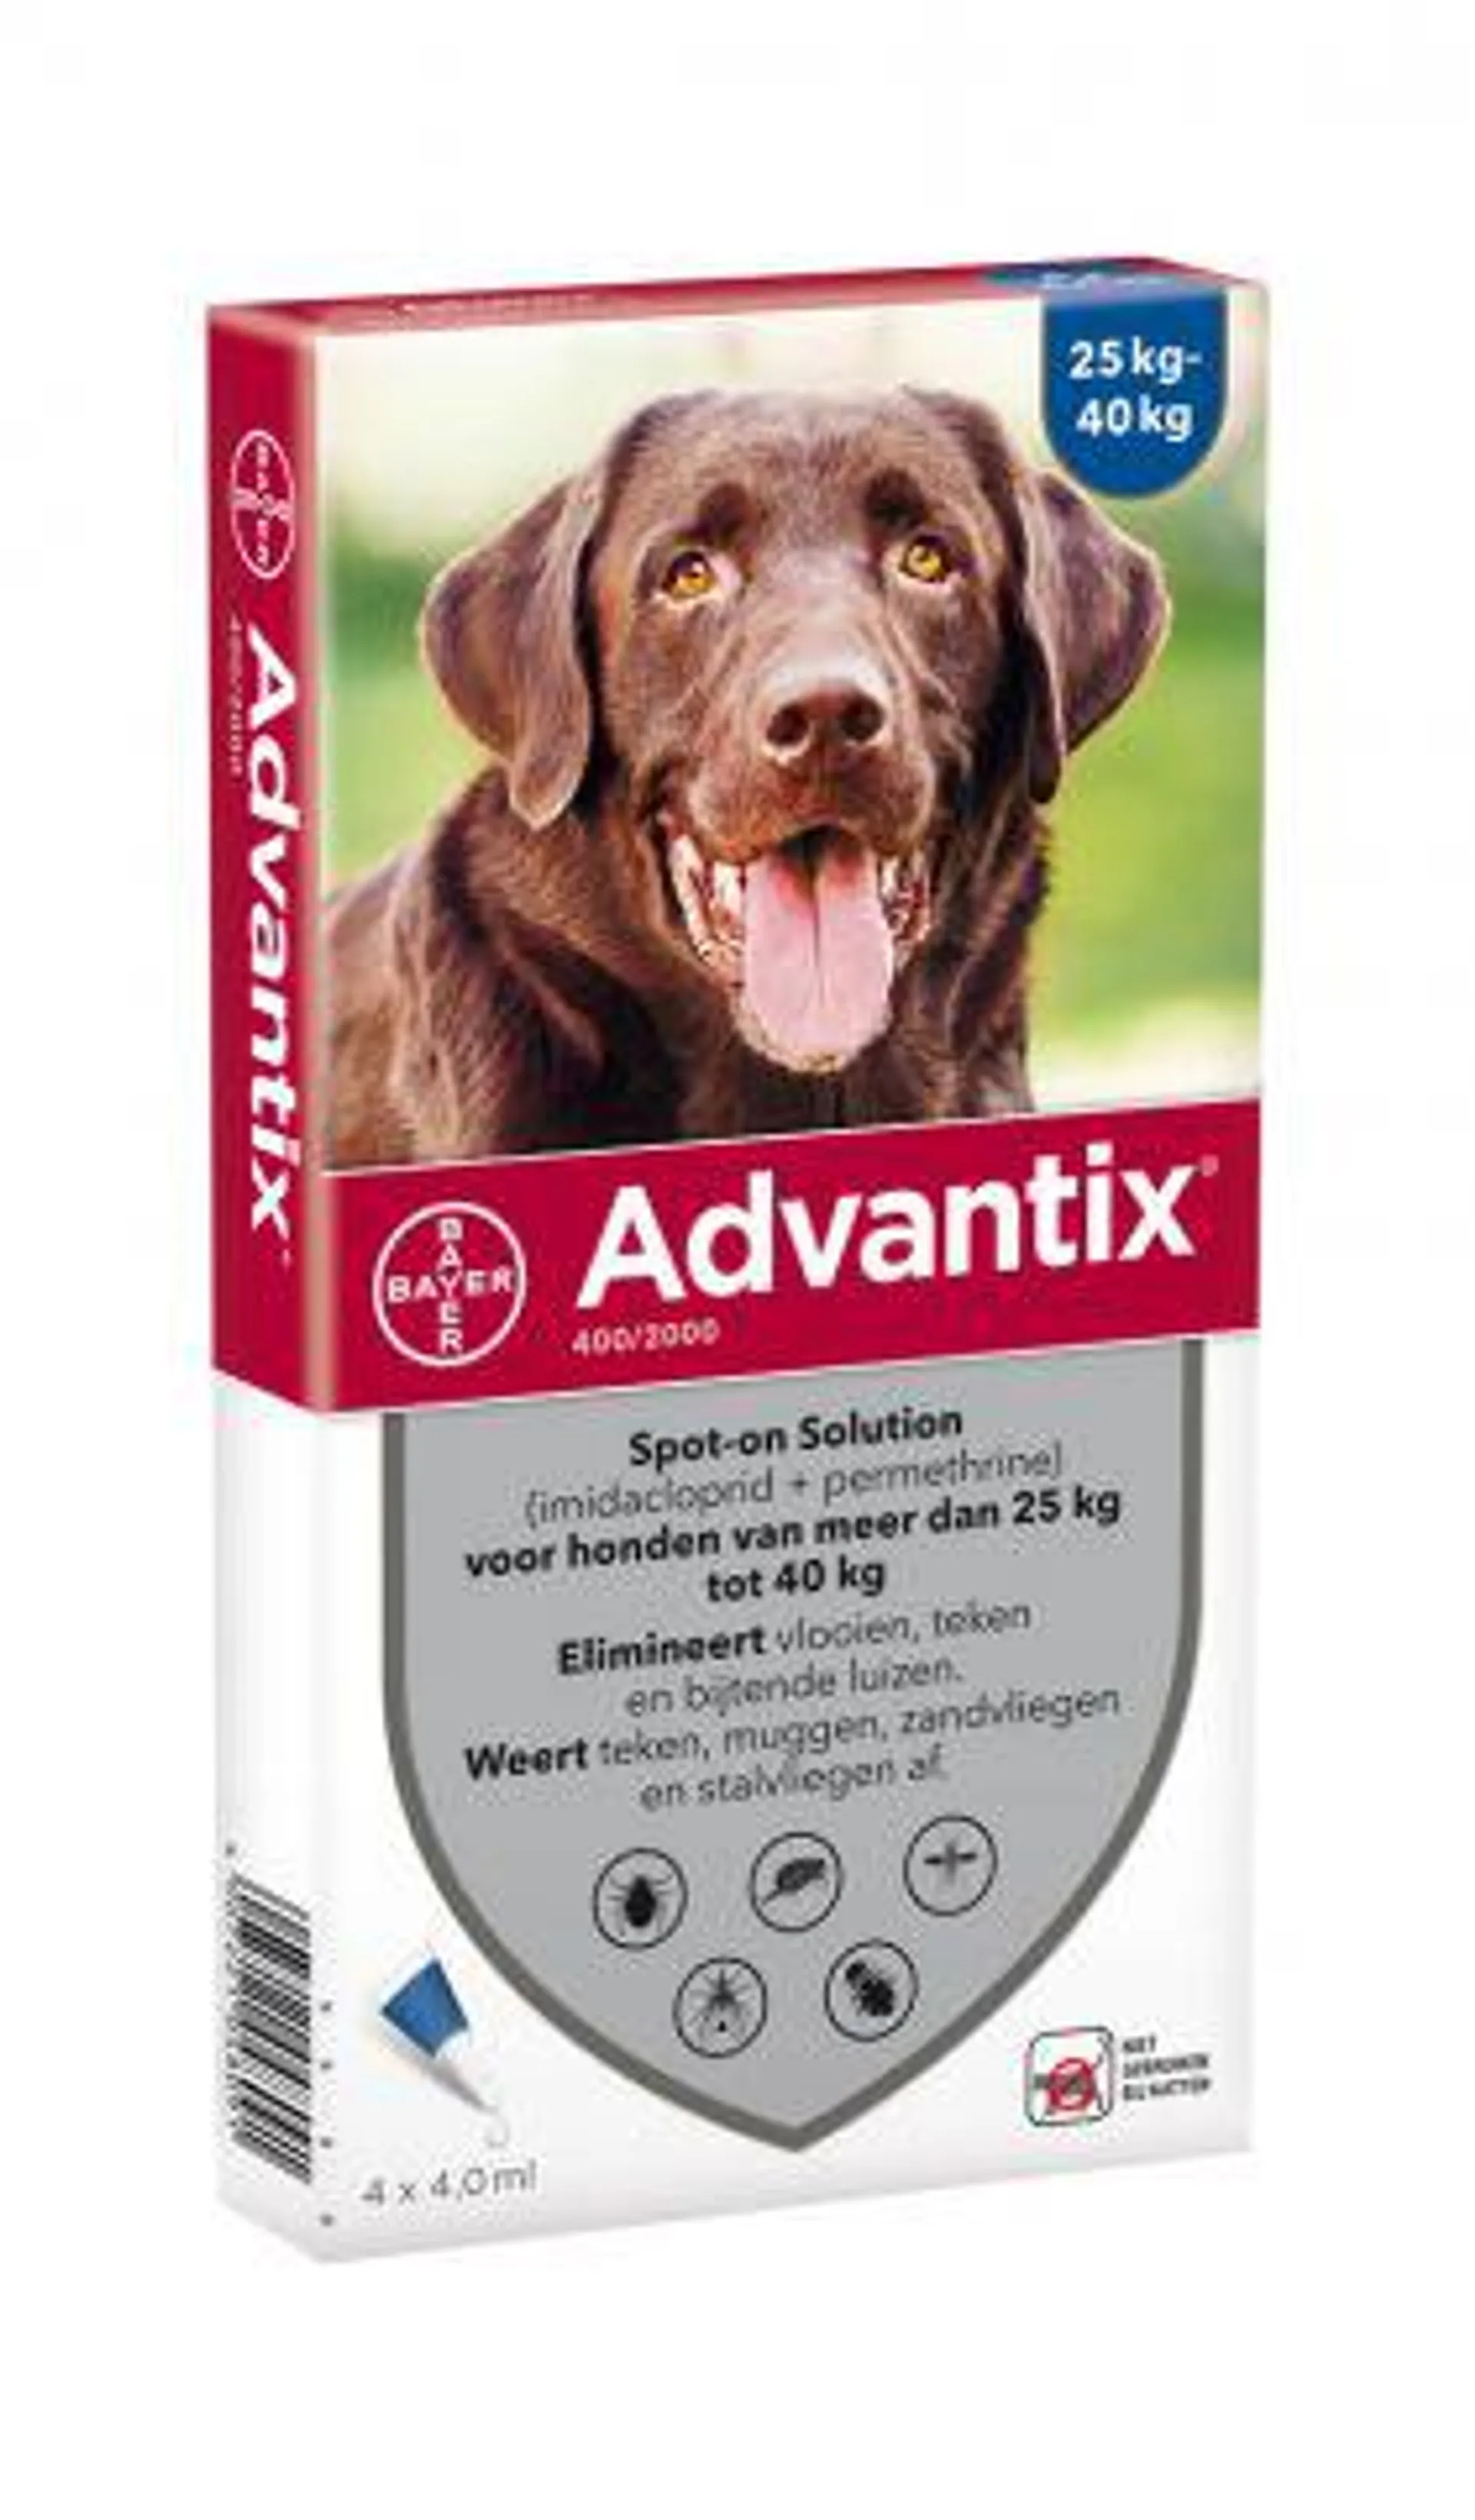 Advantix Spot-on 400 (25 - 40 kg) - Teken & Vlooien middel - 4 X 4,0 ml